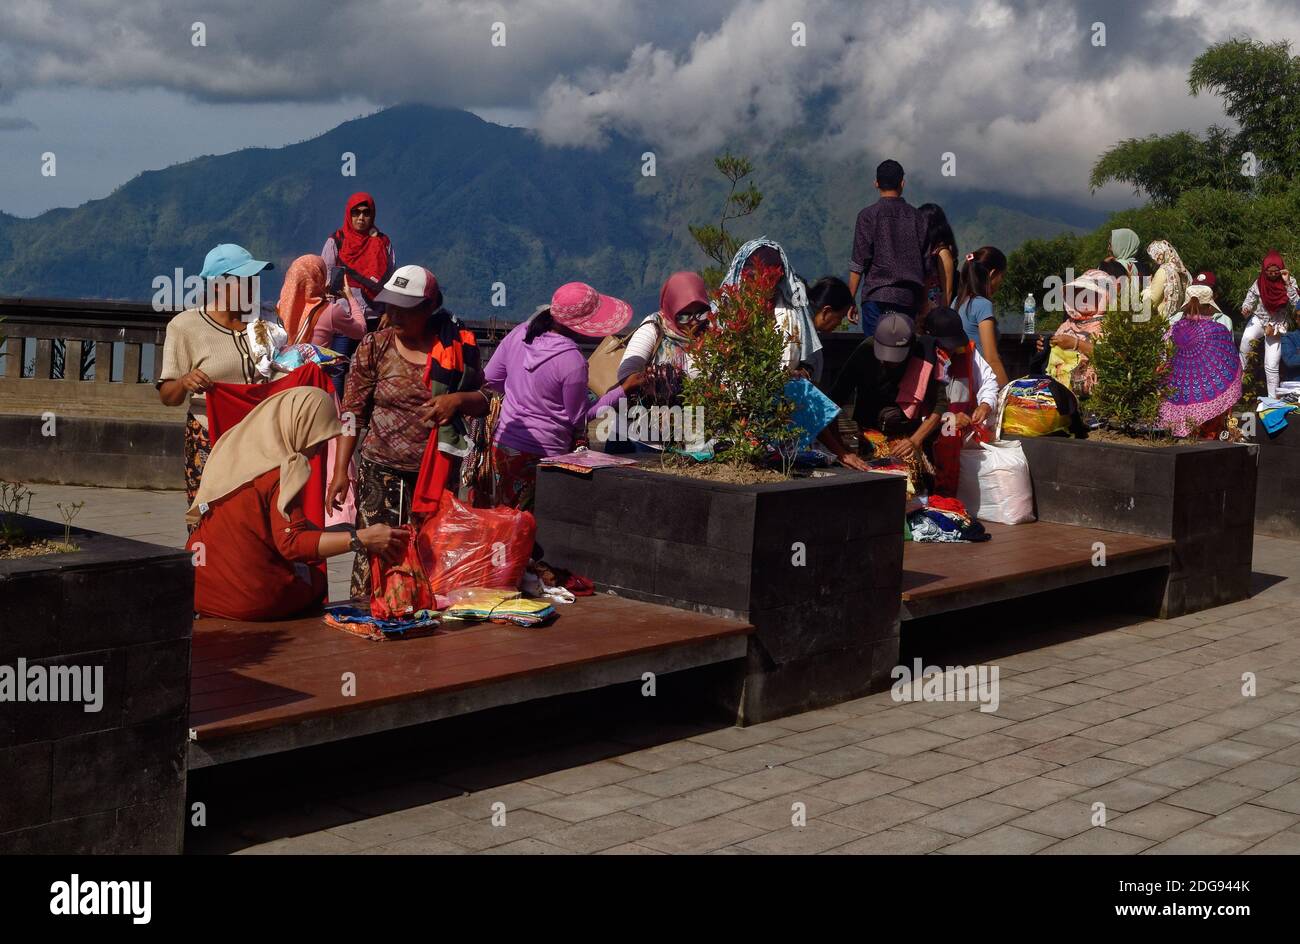 Des motards avec des souvenirs qui se vendent aux touristes à un point d'observation du lac de Penelokan Batur à Bali, en Indonésie Banque D'Images